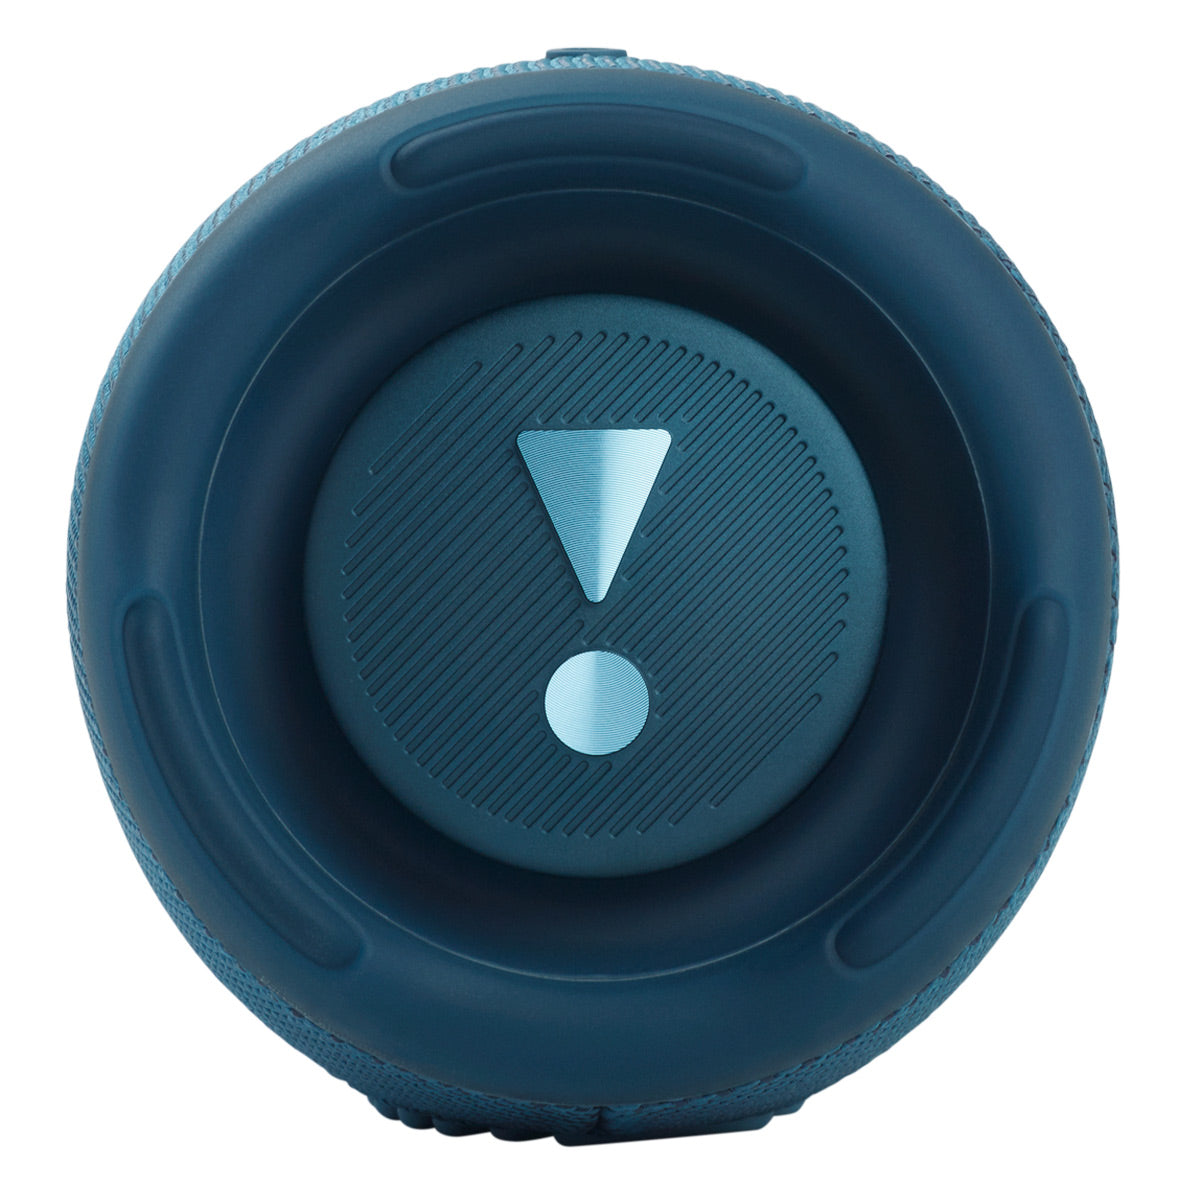 JBL Charge 5 Portable Waterproof Bluetooth Speaker with Powerbank - Pair (Blue/Gray)